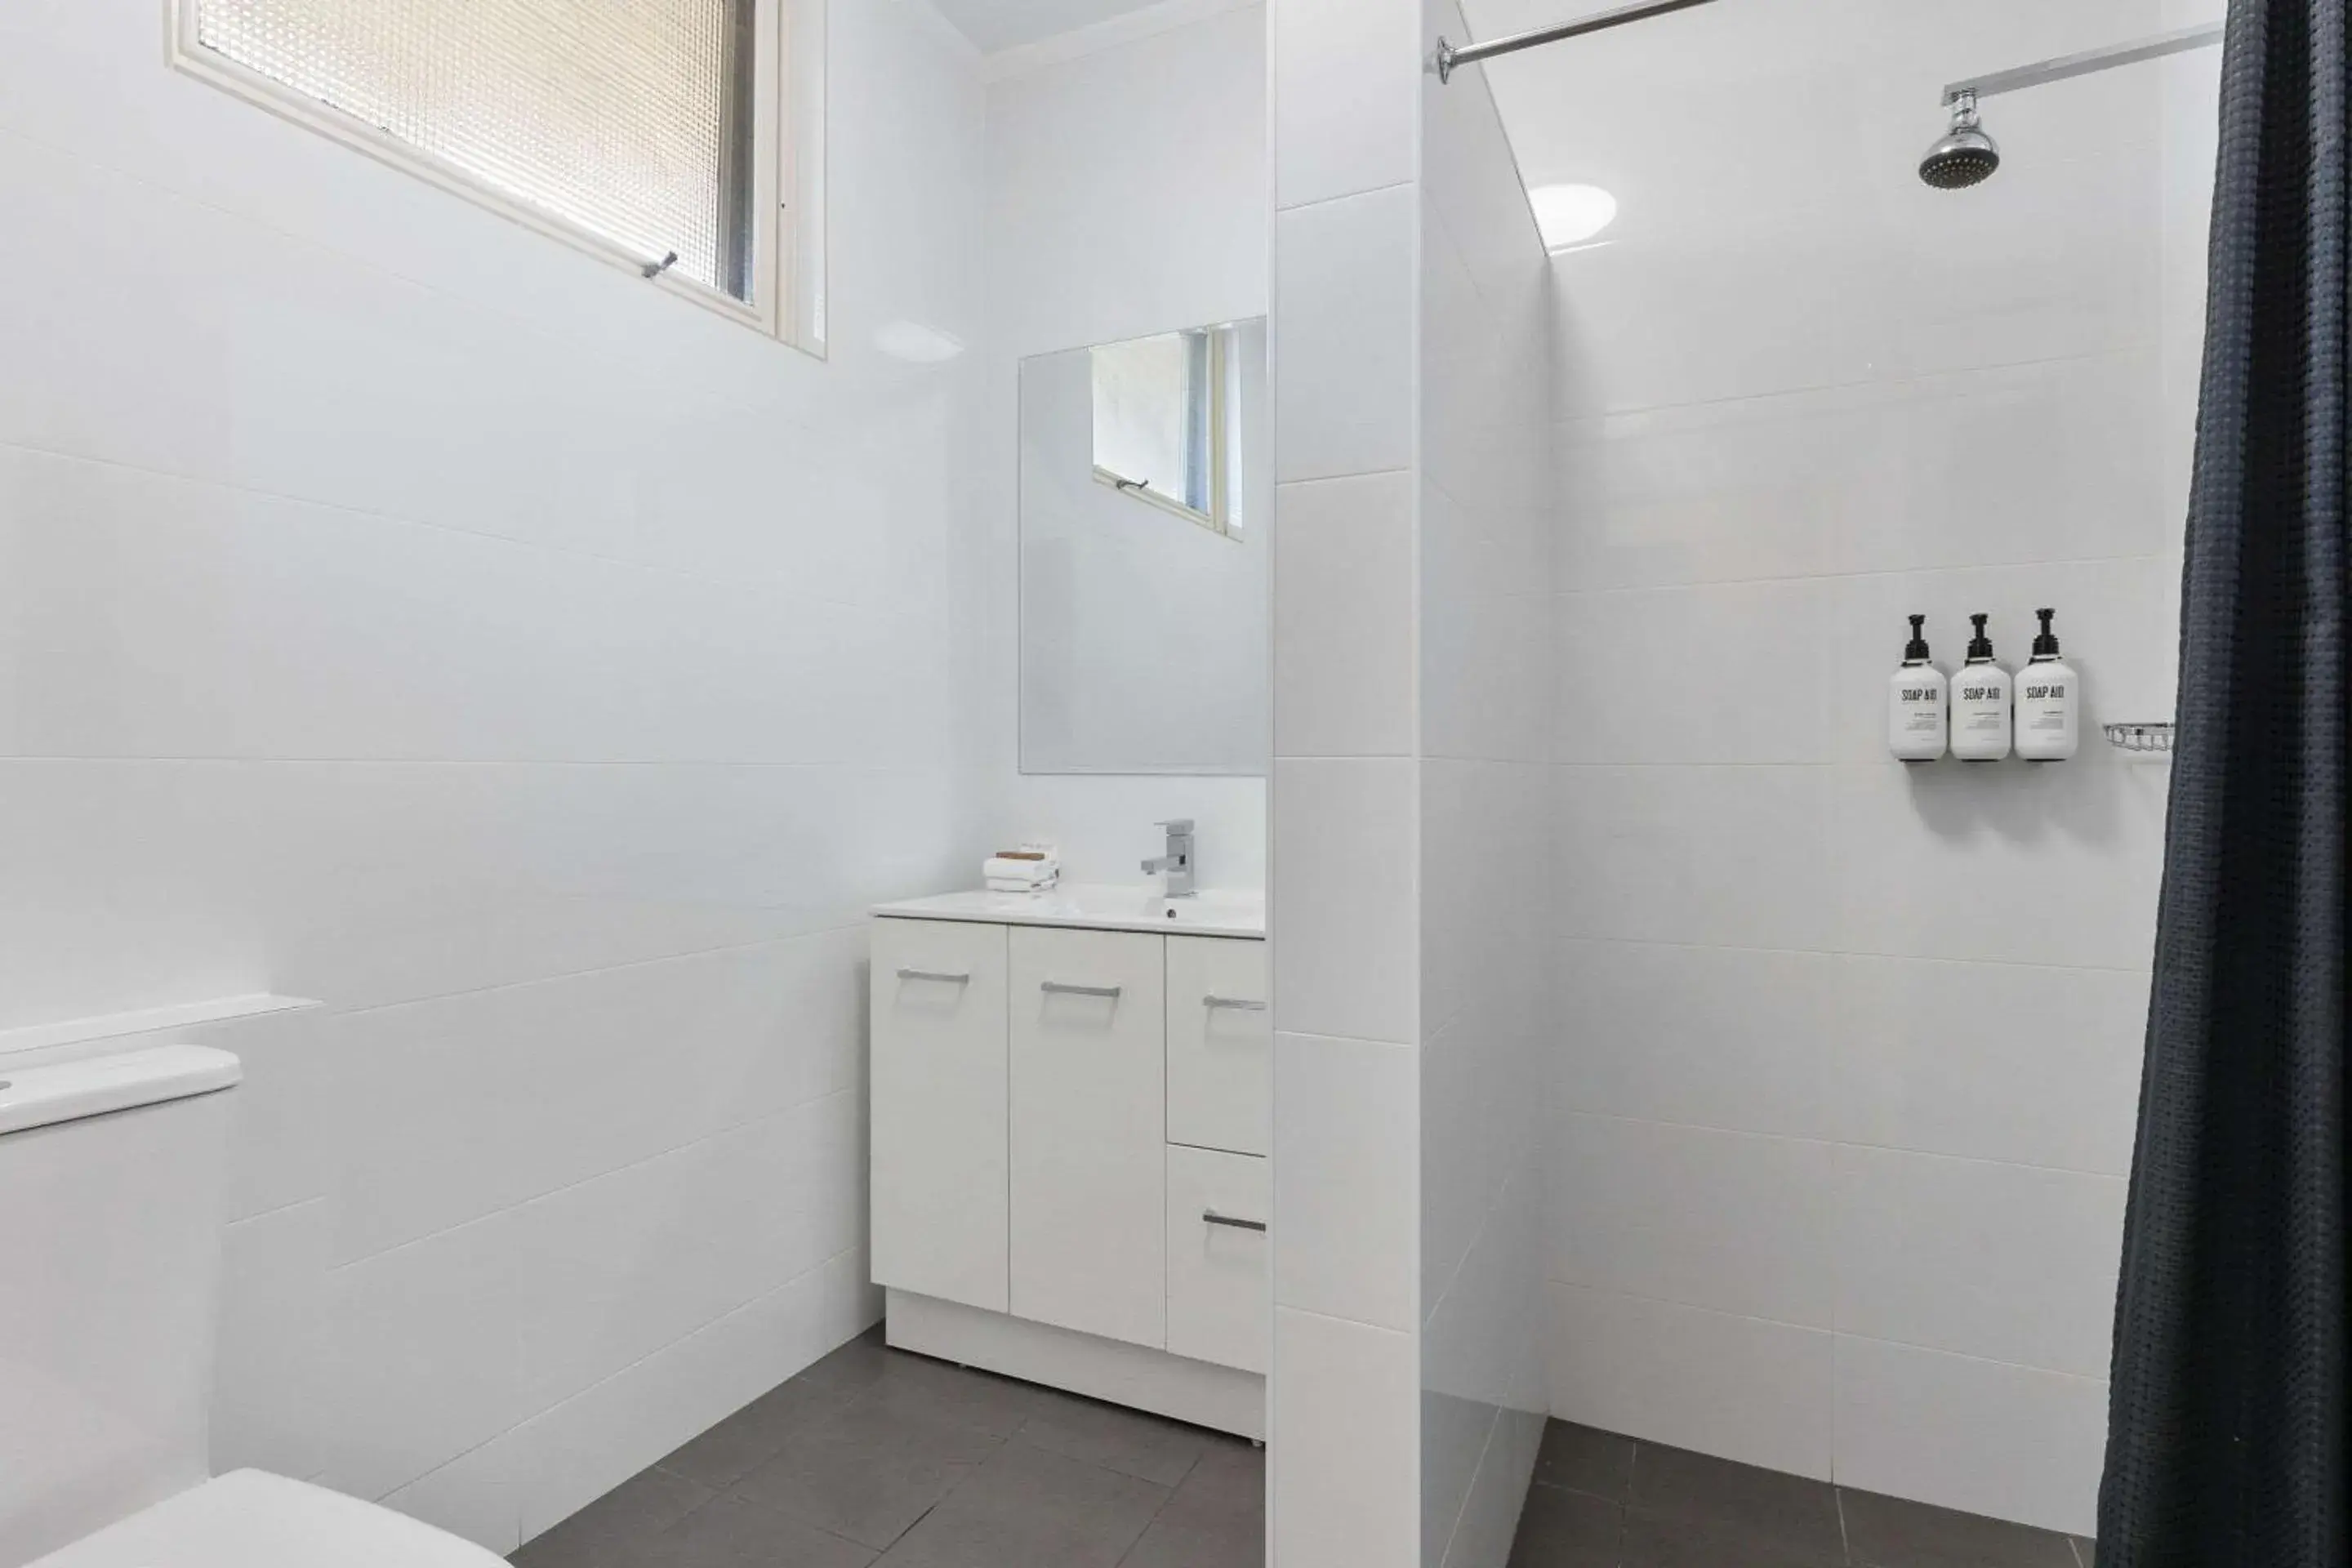 Bedroom, Bathroom in Comfort Inn Glenelg